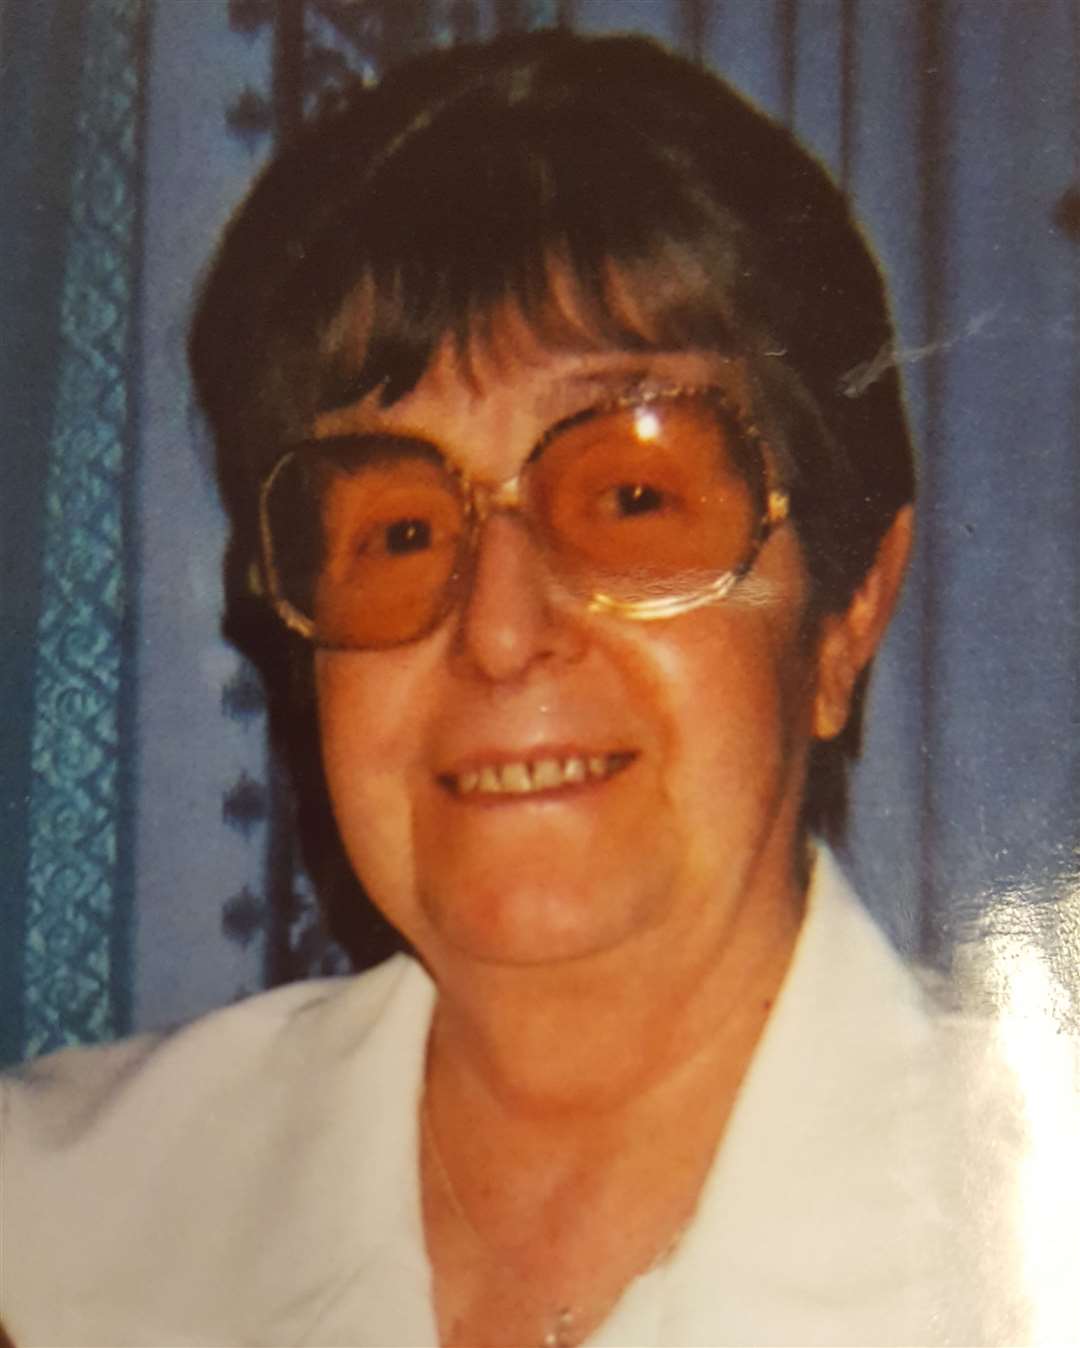 Pamela Fuller, who died in September 2017